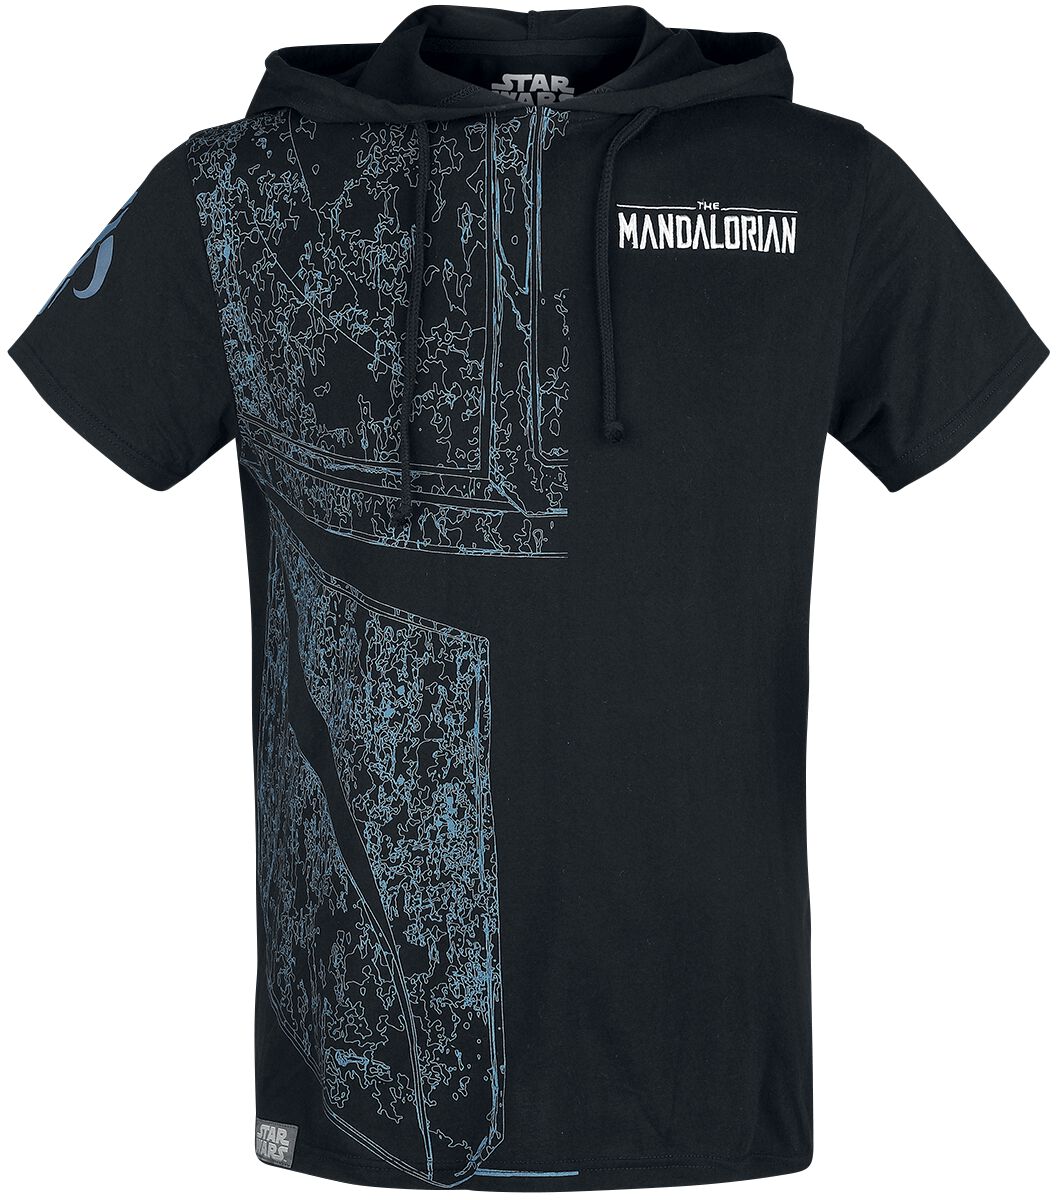 Star Wars T-Shirt - The Mandalorian - S bis XXL - für Männer - Größe S - schwarz  - EMP exklusives Merchandise!